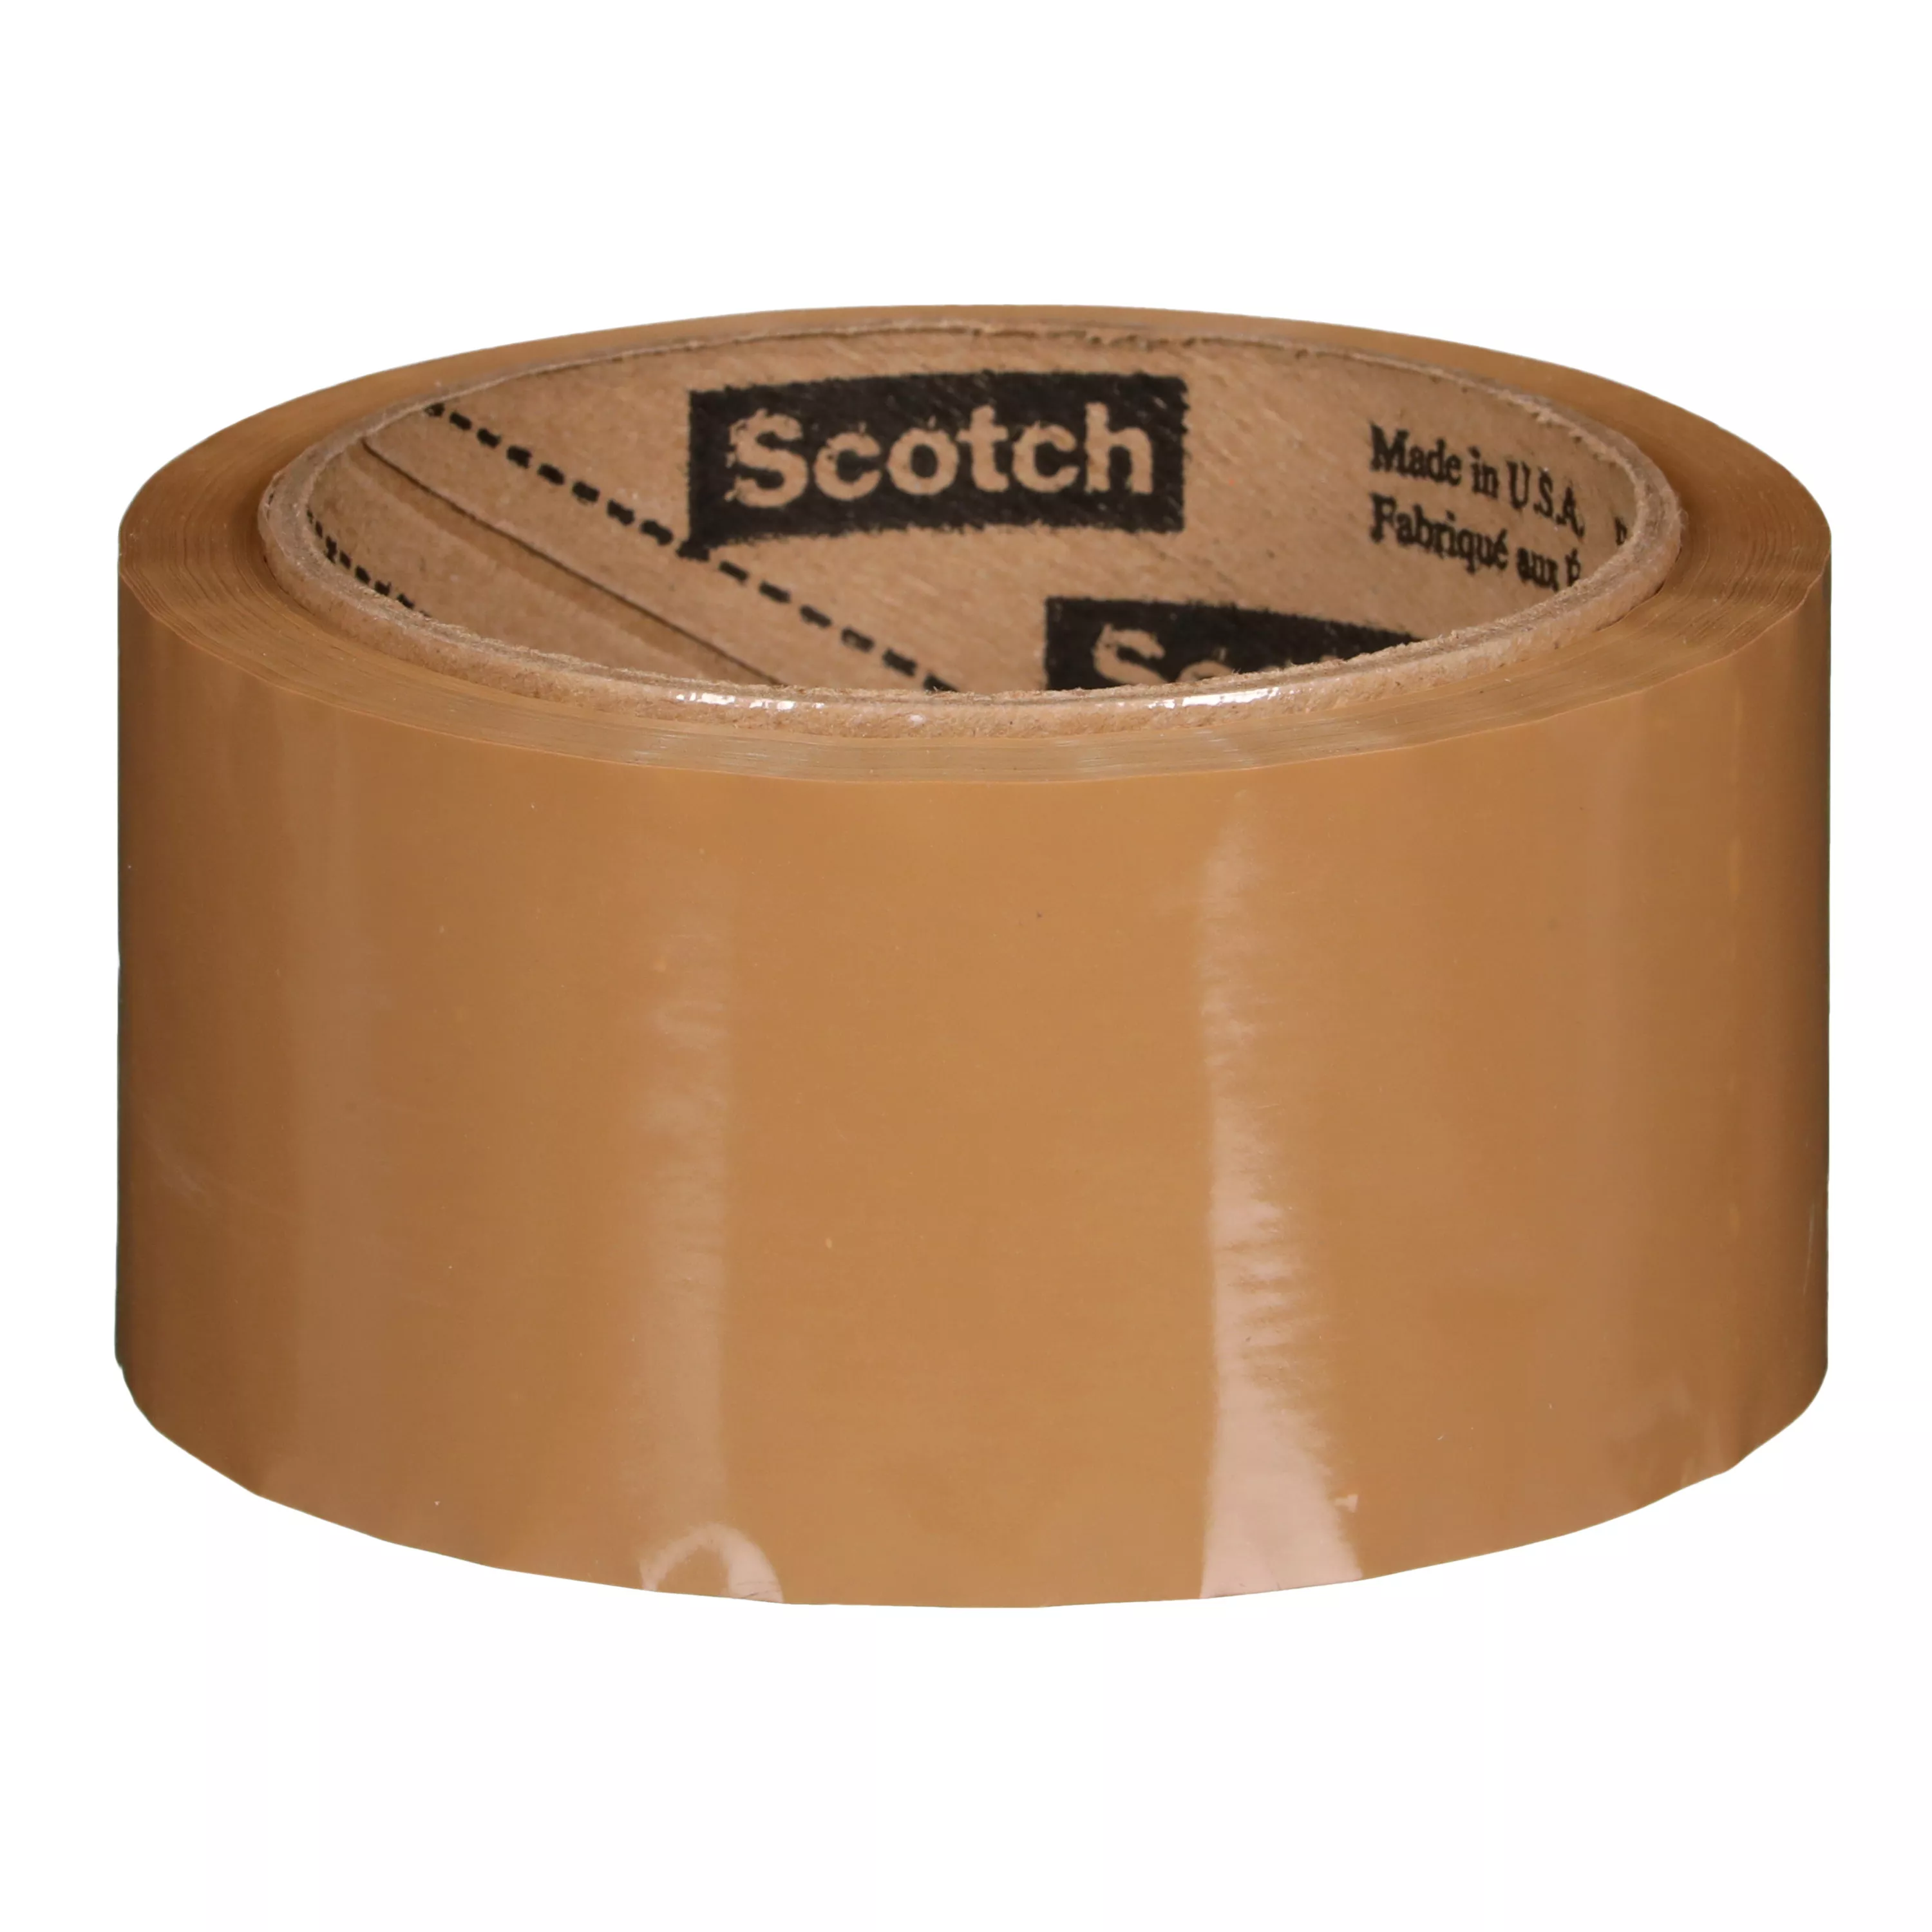 SKU 7100041609 | Scotch® Box Sealing Tape 371